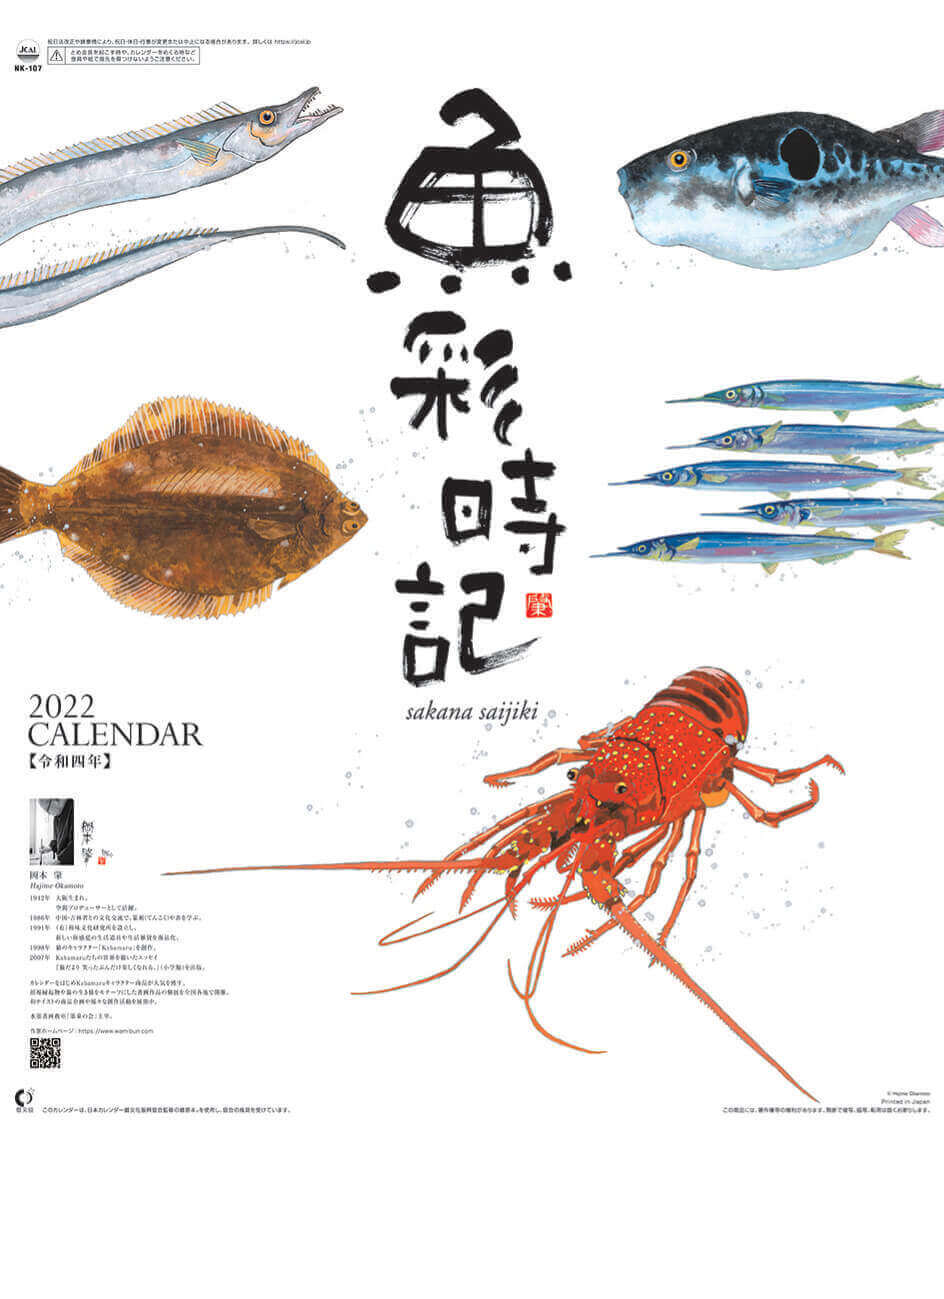  魚彩時記 -岡本肇- 2022年カレンダーの画像